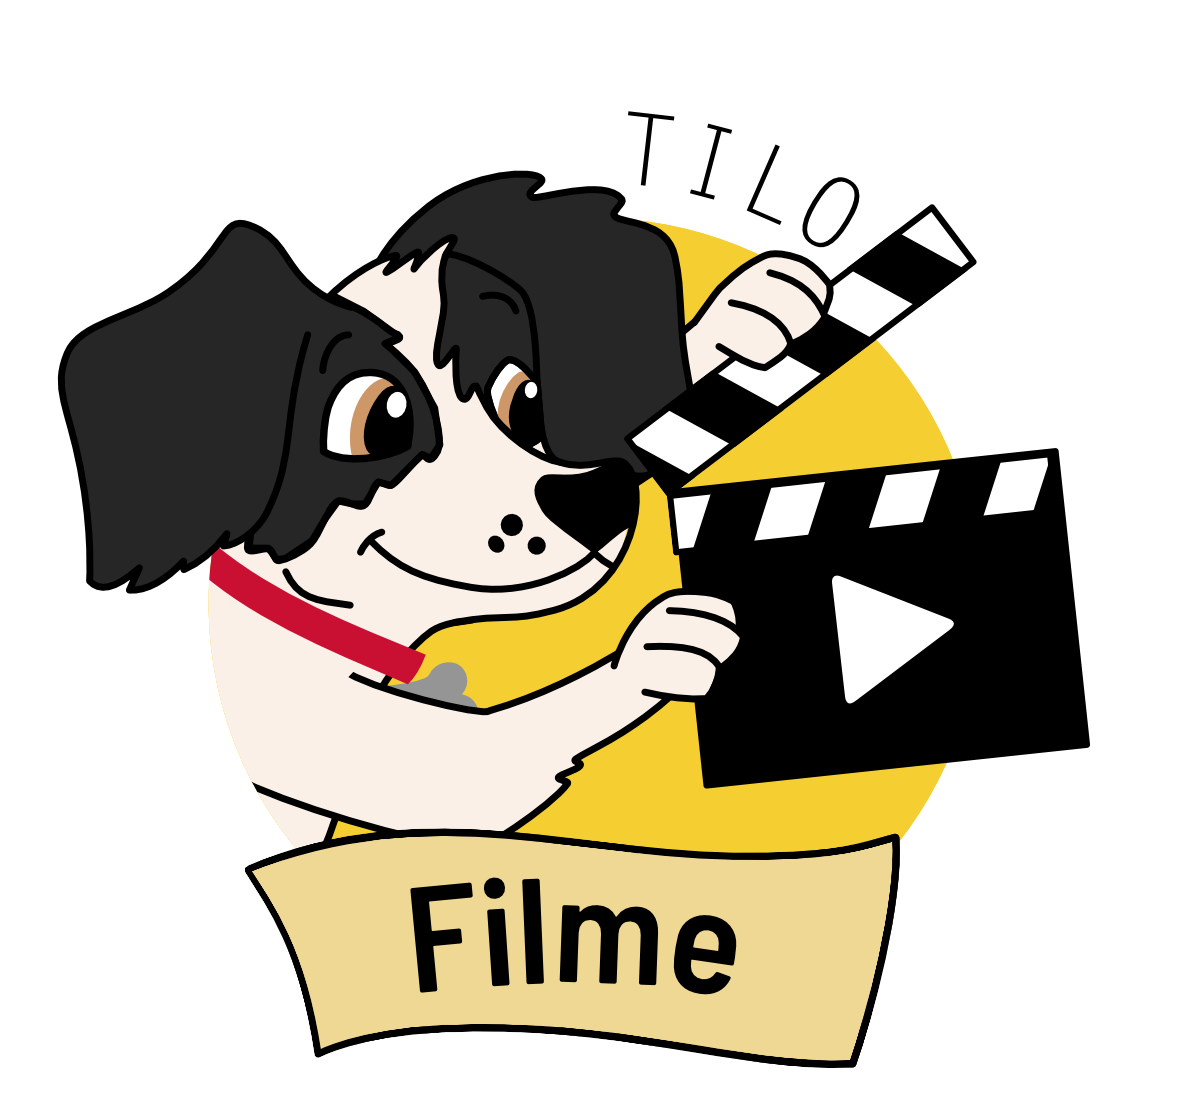 Hund Tilo hält eine Filmklappe in der Hand